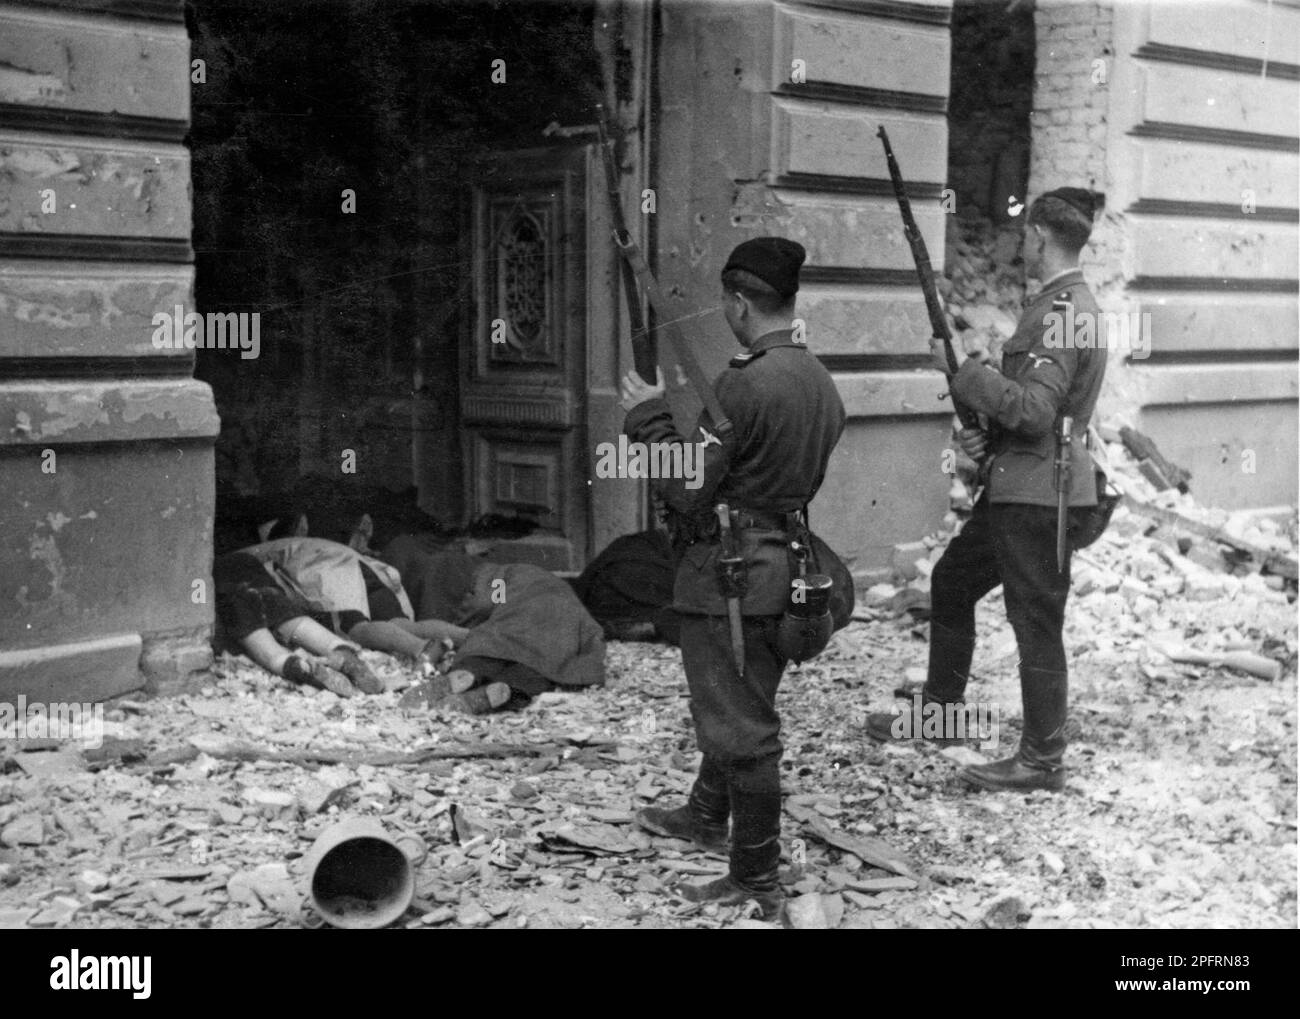 Im Januar 1943 kamen die nazis an, um die Juden des Warschauer Ghettos zu verhaften. Die Juden, die entschlossen waren, es zu bekämpfen, nahmen es mit selbstgemachten und primitiven Waffen auf die SS abgesehen. Die Verteidiger wurden hingerichtet oder deportiert, und das Ghetto-Gebiet wurde systematisch abgerissen. Dieses Ereignis ist bekannt als Ghetto-Aufstand. Dieses Bild zeigt die Leichen von Juden, die nach ihrer Gefangennahme hingerichtet wurden. Dieses Bild stammt aus der deutschen Fotoaufzeichnung des Ereignisses, bekannt als Stroop-Bericht. Stockfoto